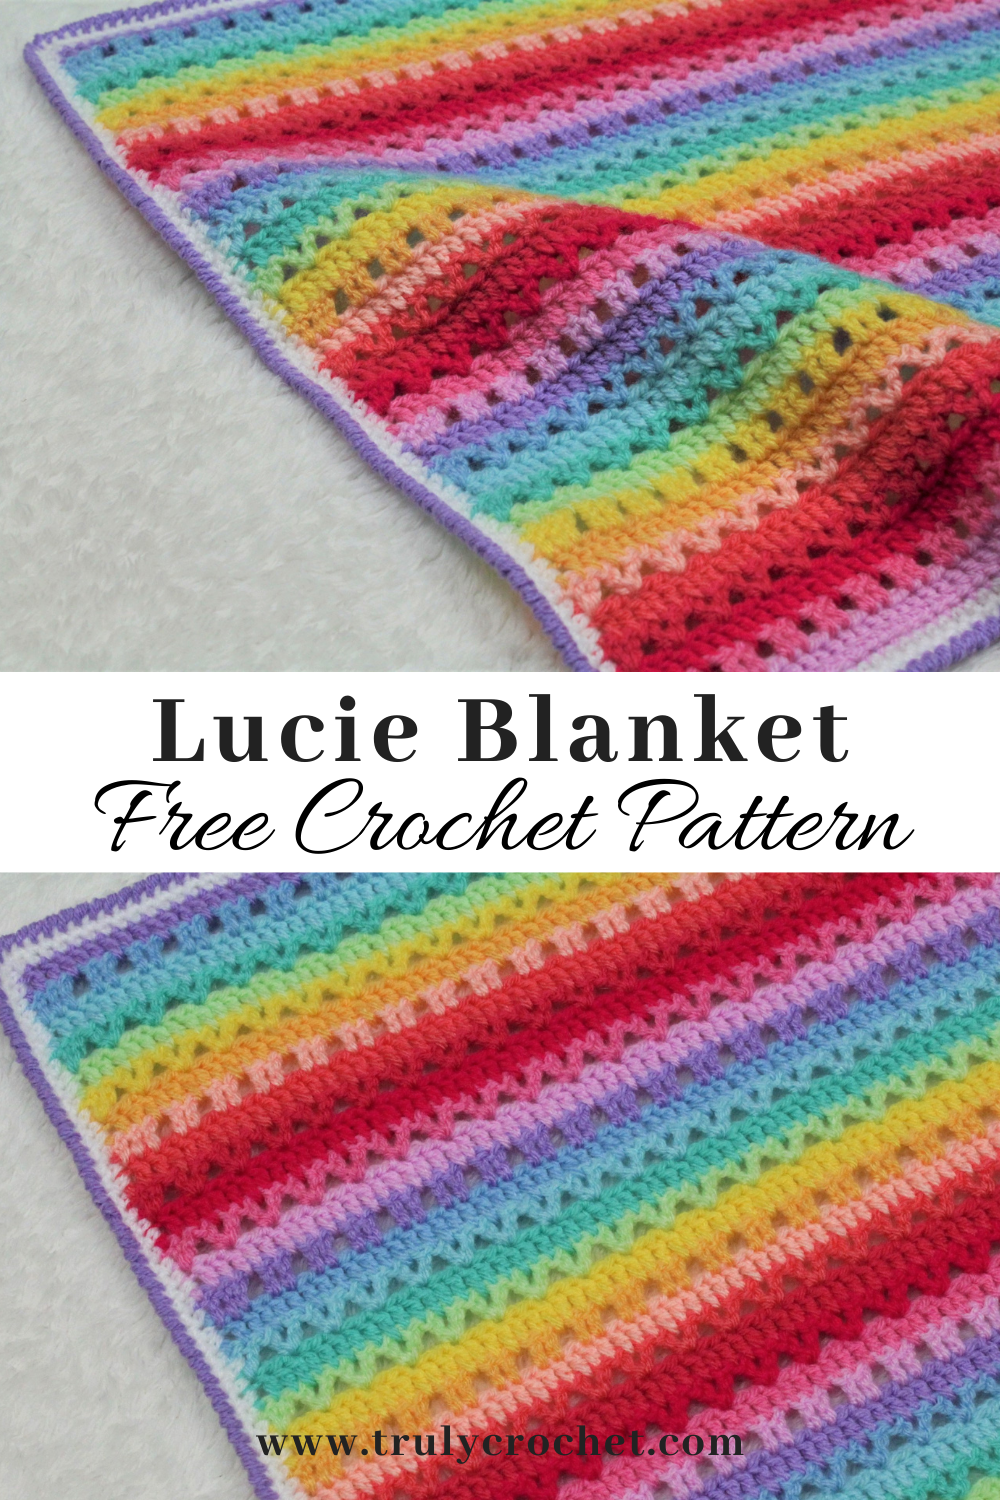 Lucie Blanket Pin - Free Crochet Pattern